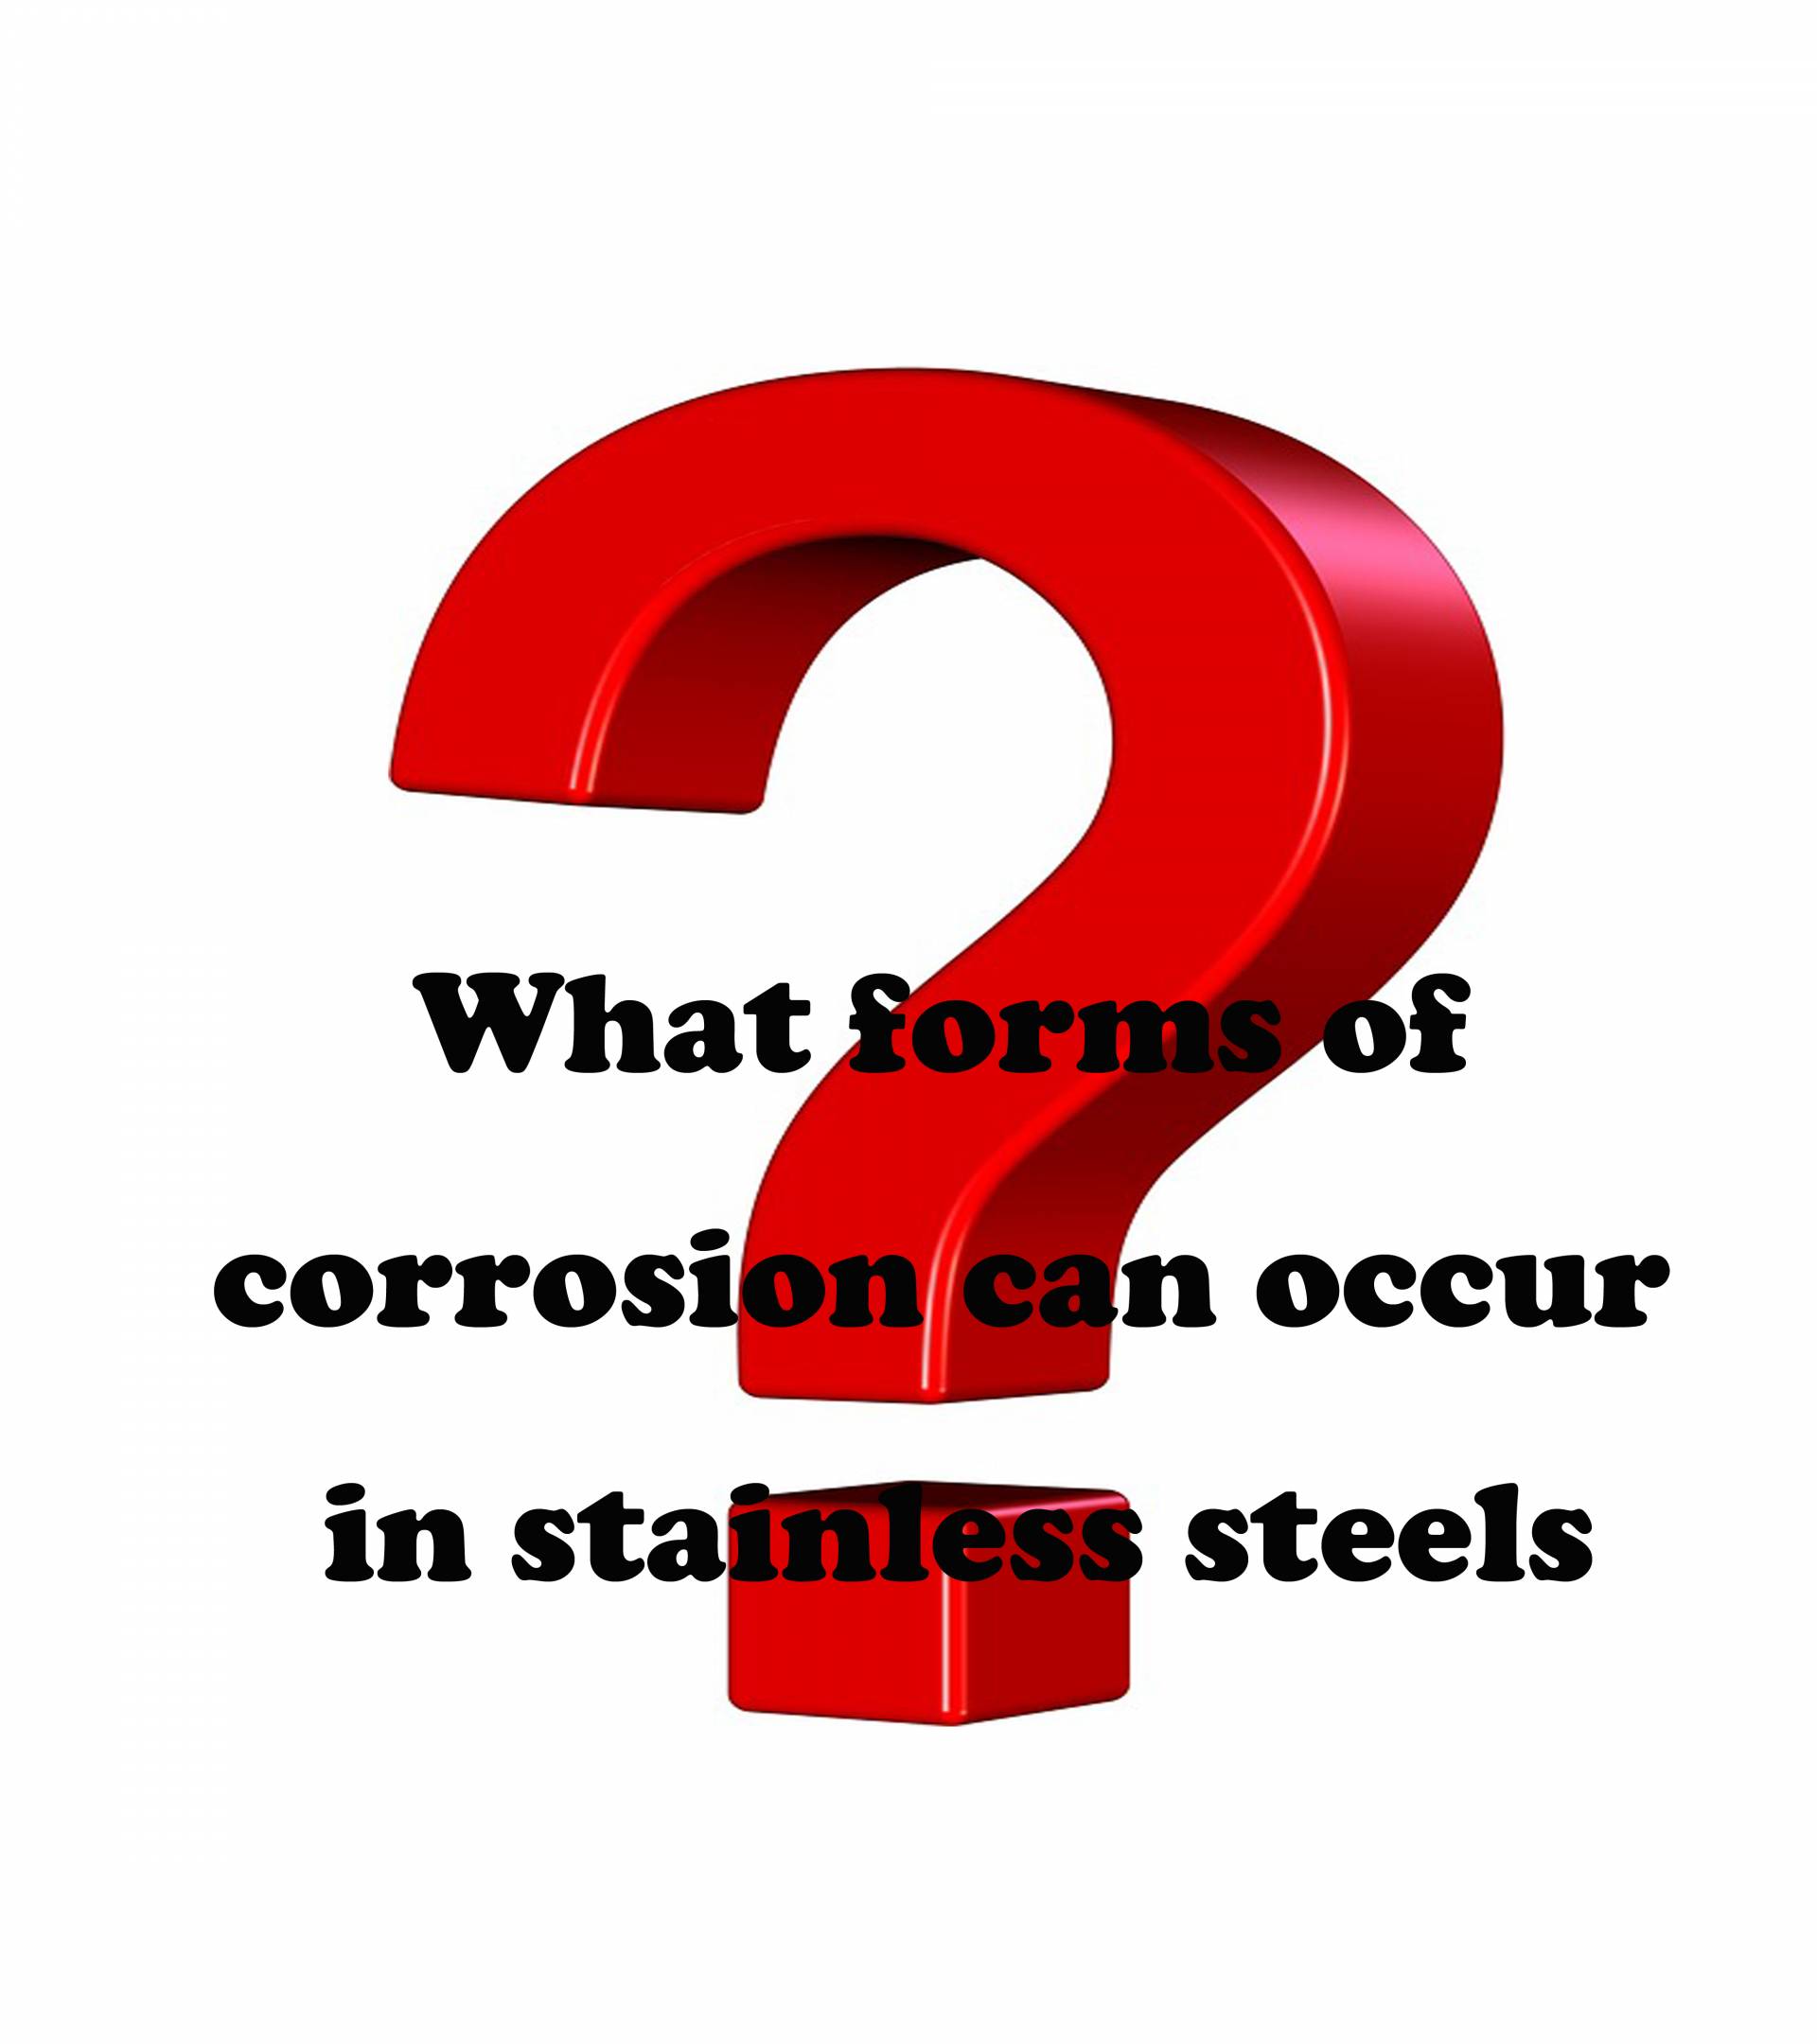 Какие формы коррозии могут возникнуть в нержавеющих сталях?